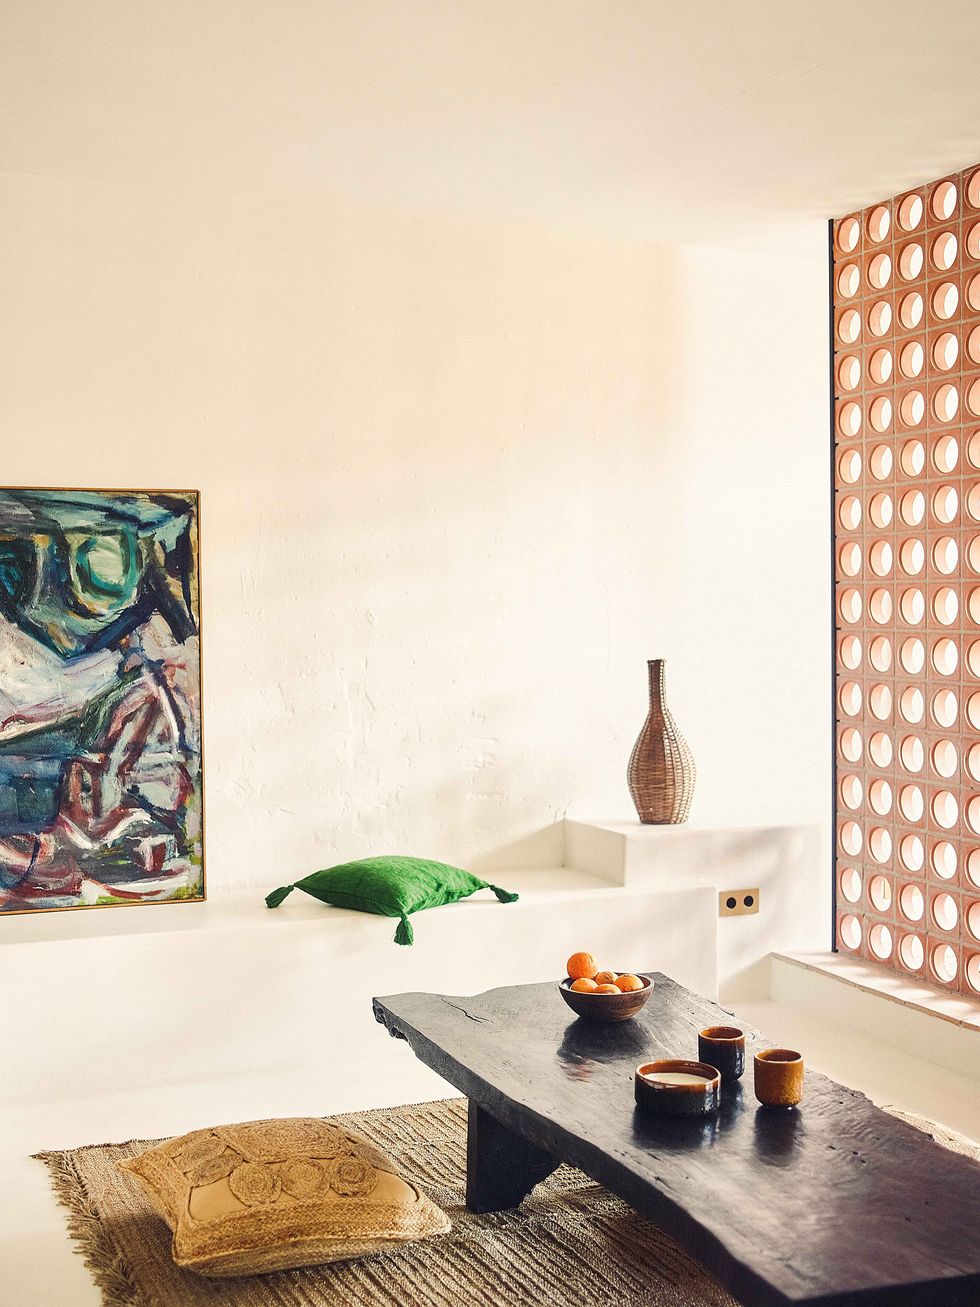 salón de estilo artesanal y mediterráneo con mesa baja de madera oscura y alfombra de fibras naturales, con un fondo y pared blancos